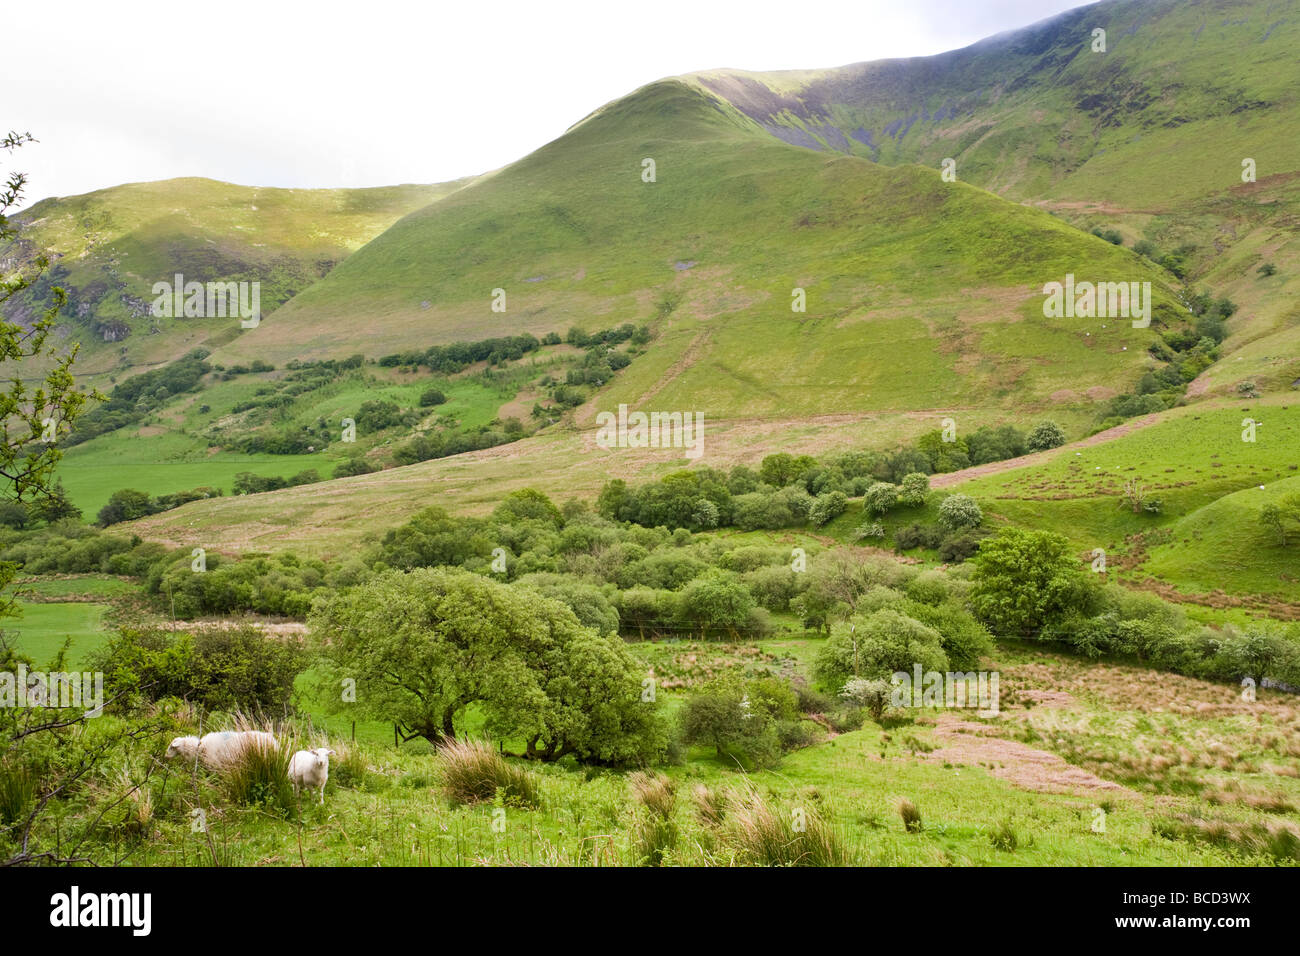 Looking towards Cadair Idris from the A470, east of Dolgellau, Gwynedd, Wales Stock Photo